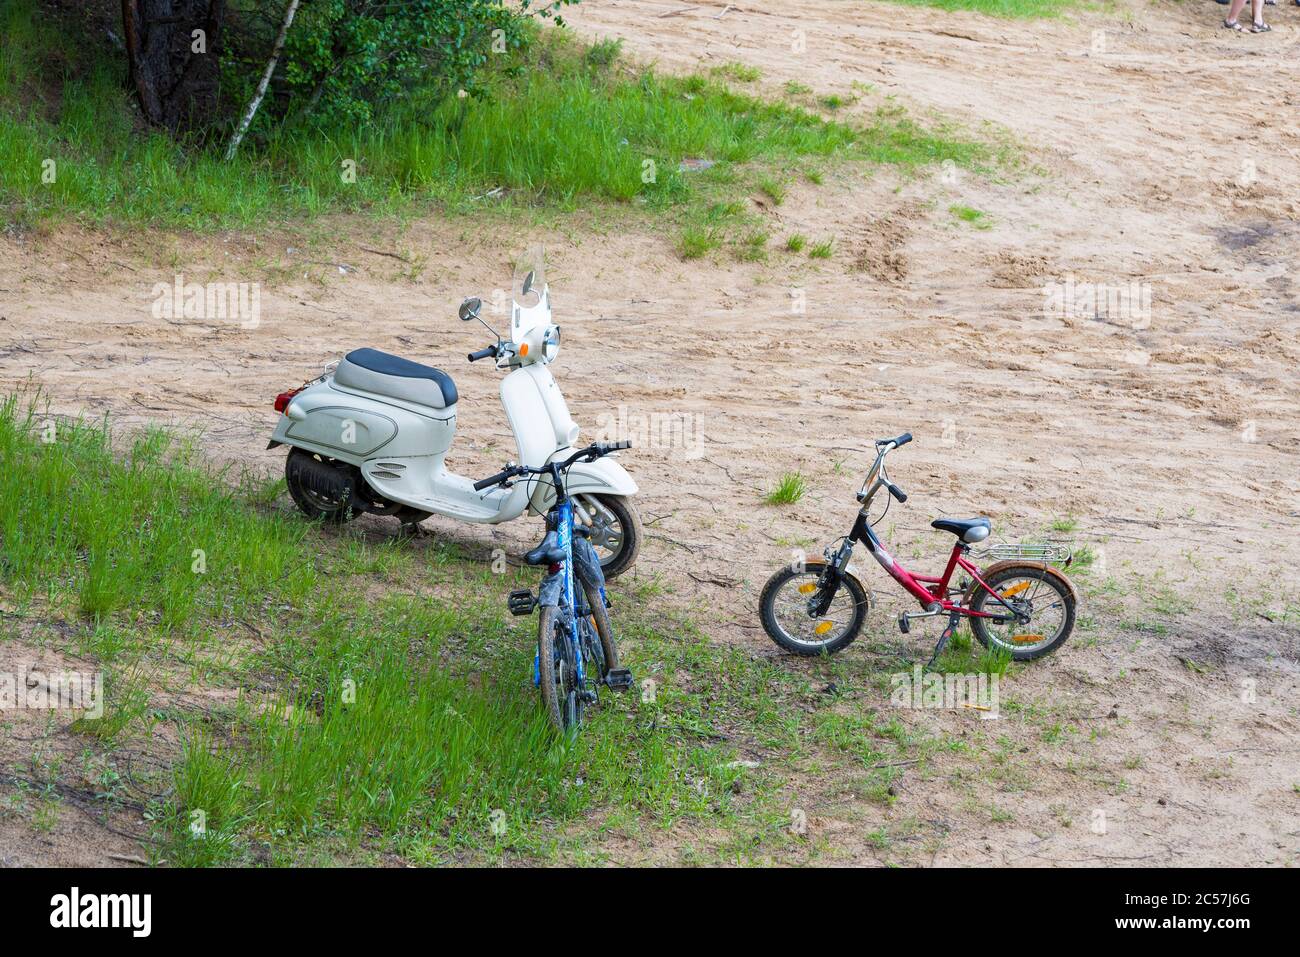 Un viejo ciclomotor de época y dos bicicletas están en la arena. Equipo de época. Foto de stock